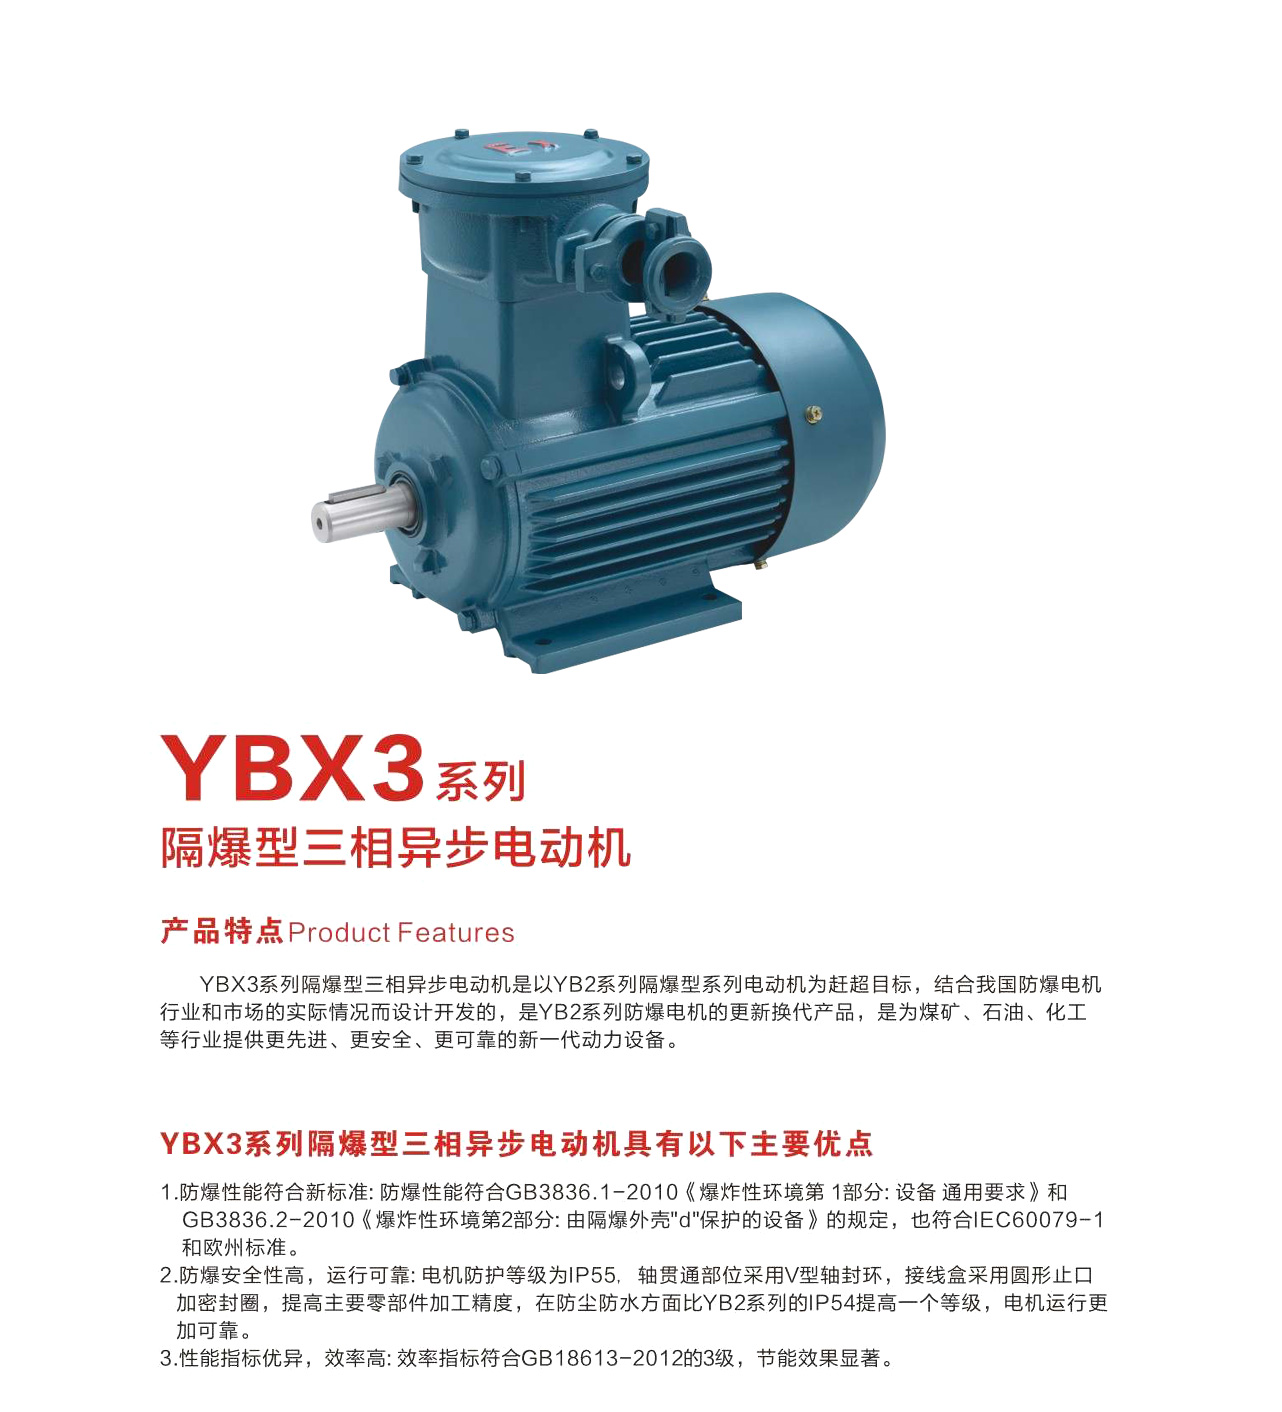 YBX3系列隔爆型三相异步电动机.jpg